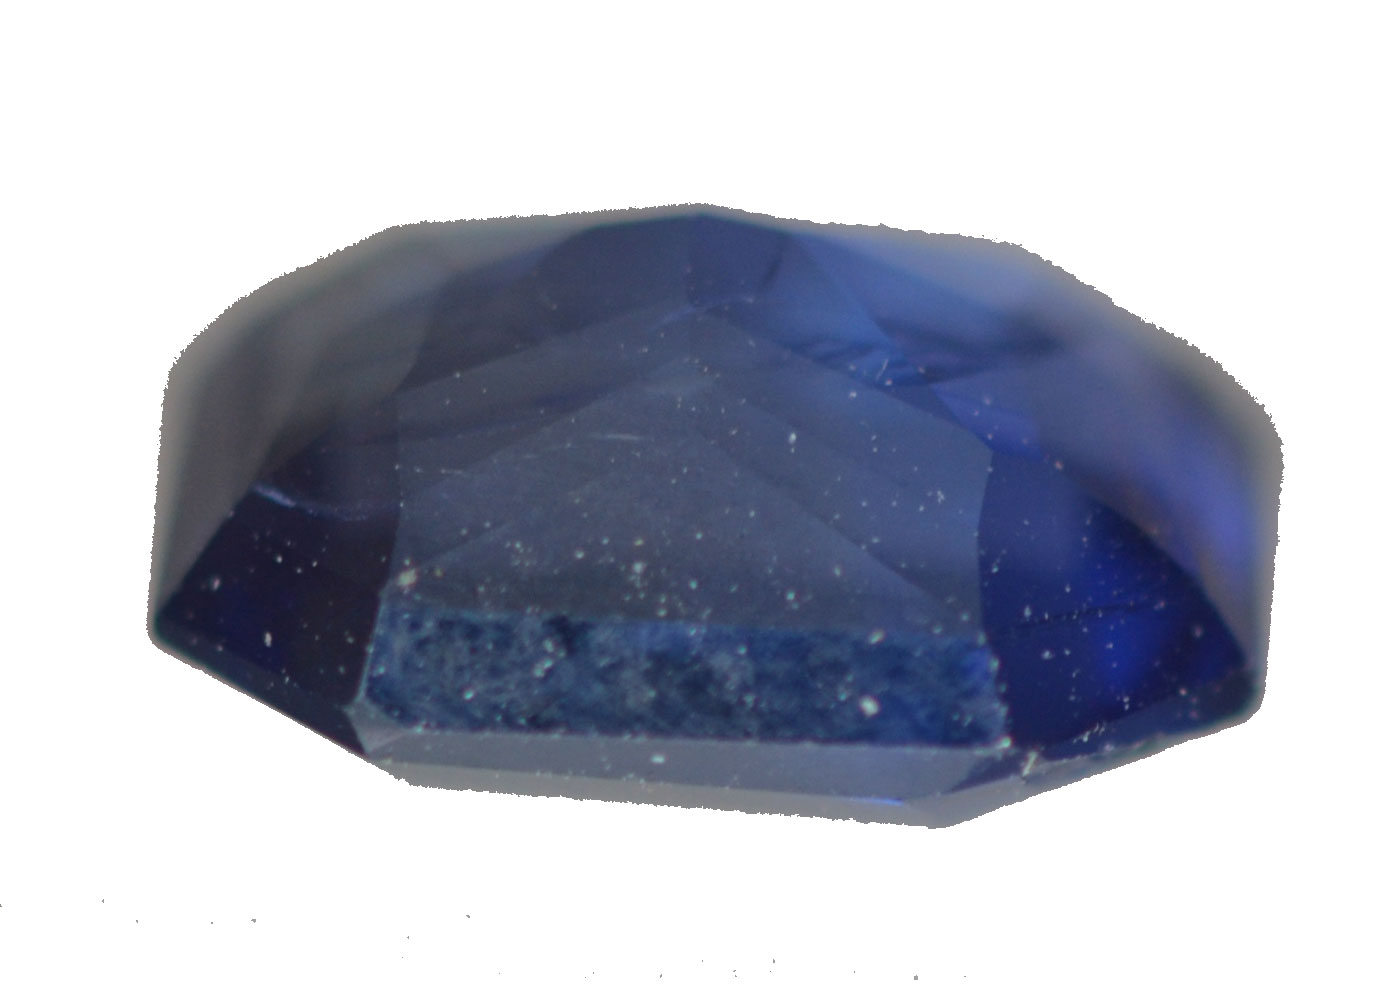 CGL Certified Unheated Blue Emerald Cut Sapphire 2.16 C8.22x6.17x4.32mm